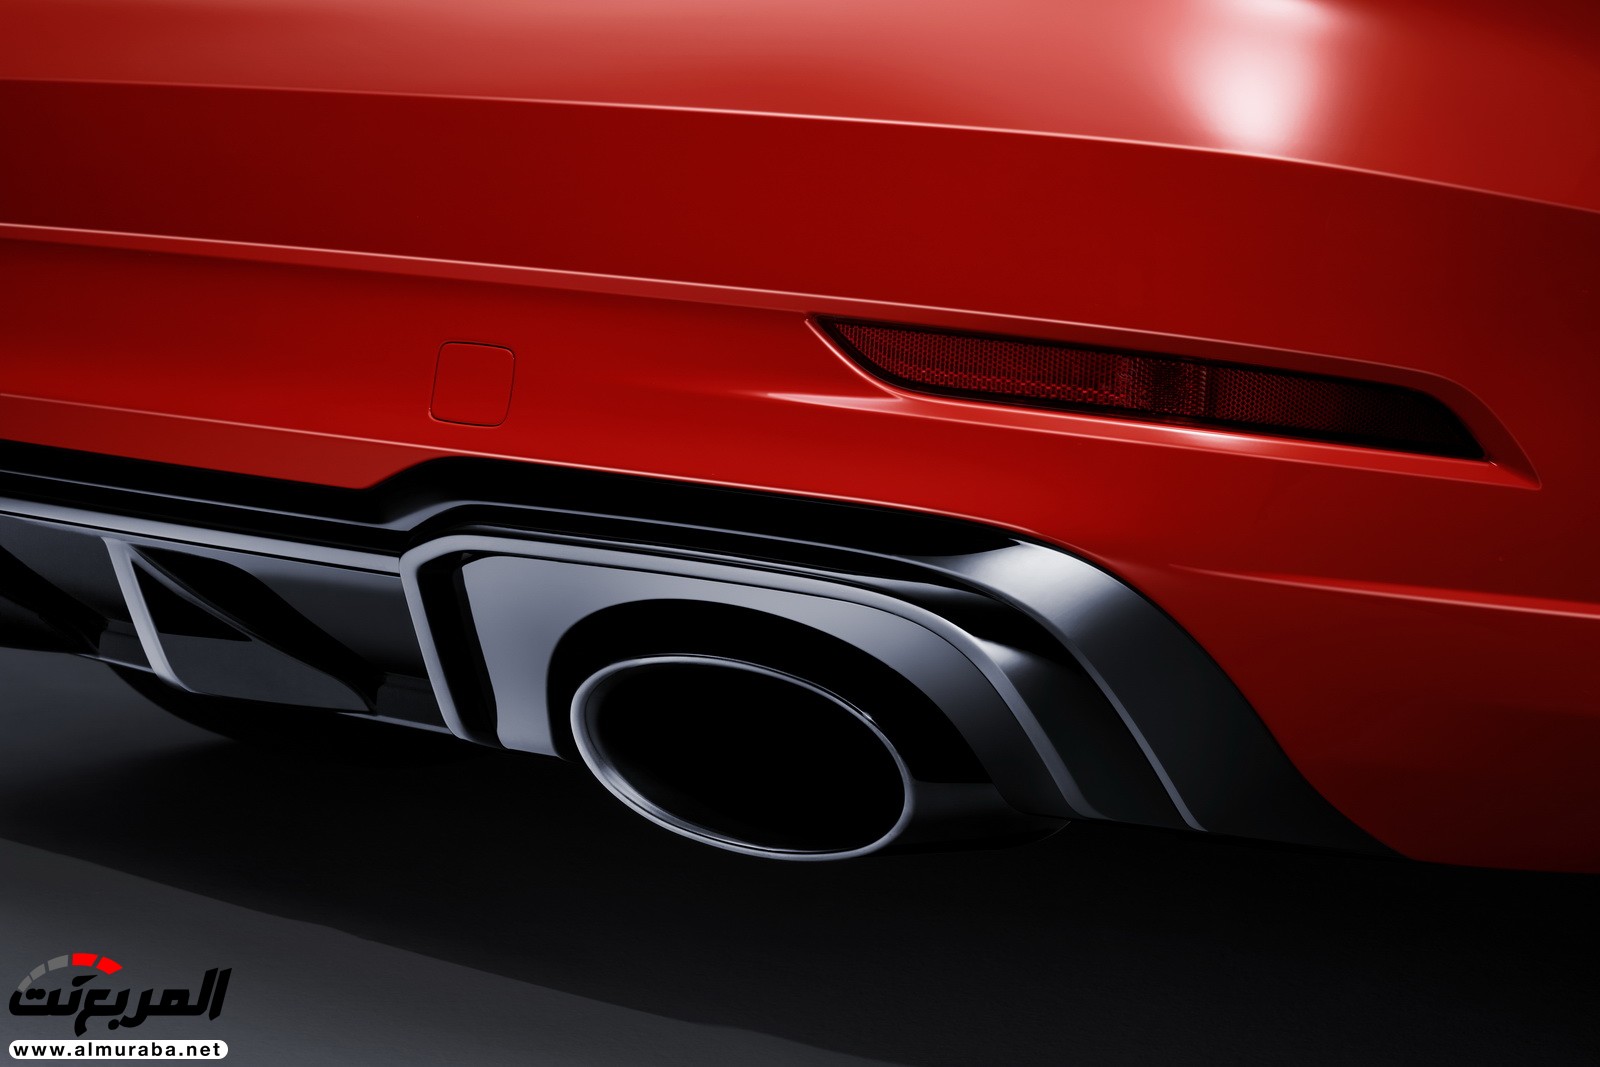 "أودي" تكشف عن RS3 الجديدة كليا 2018 بقوة 395 حصان Audi 37